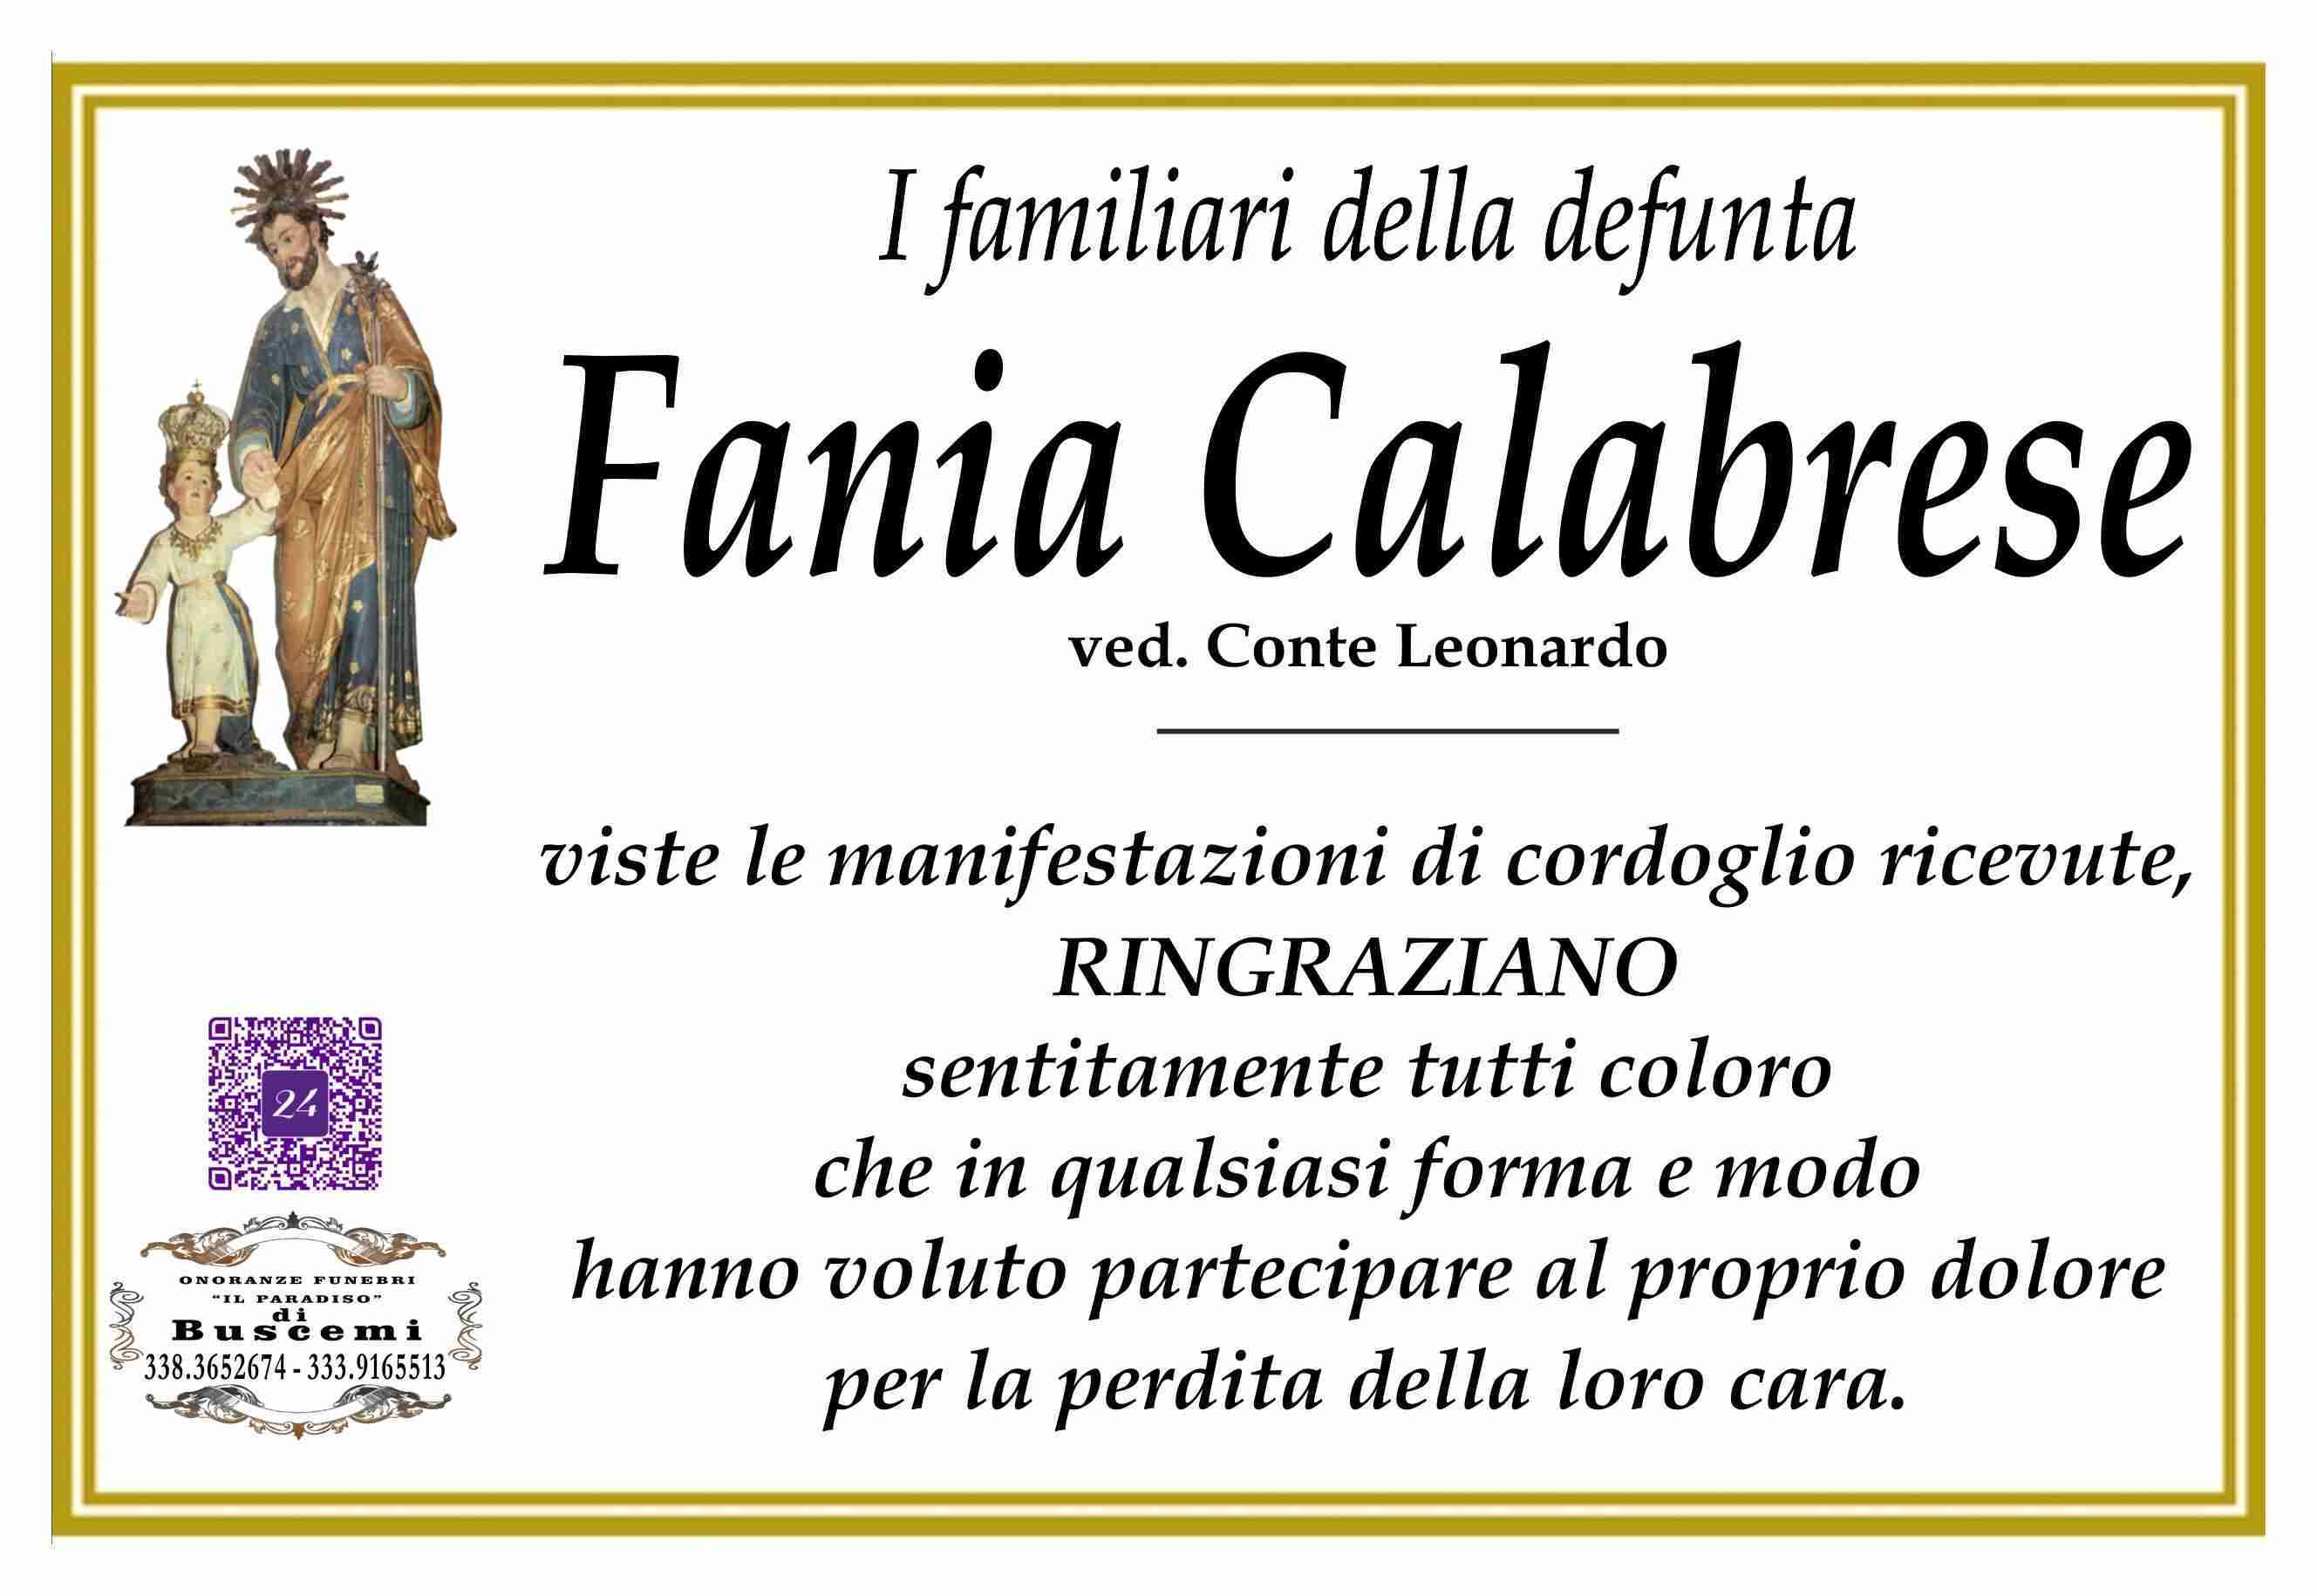 Fania Calabrese